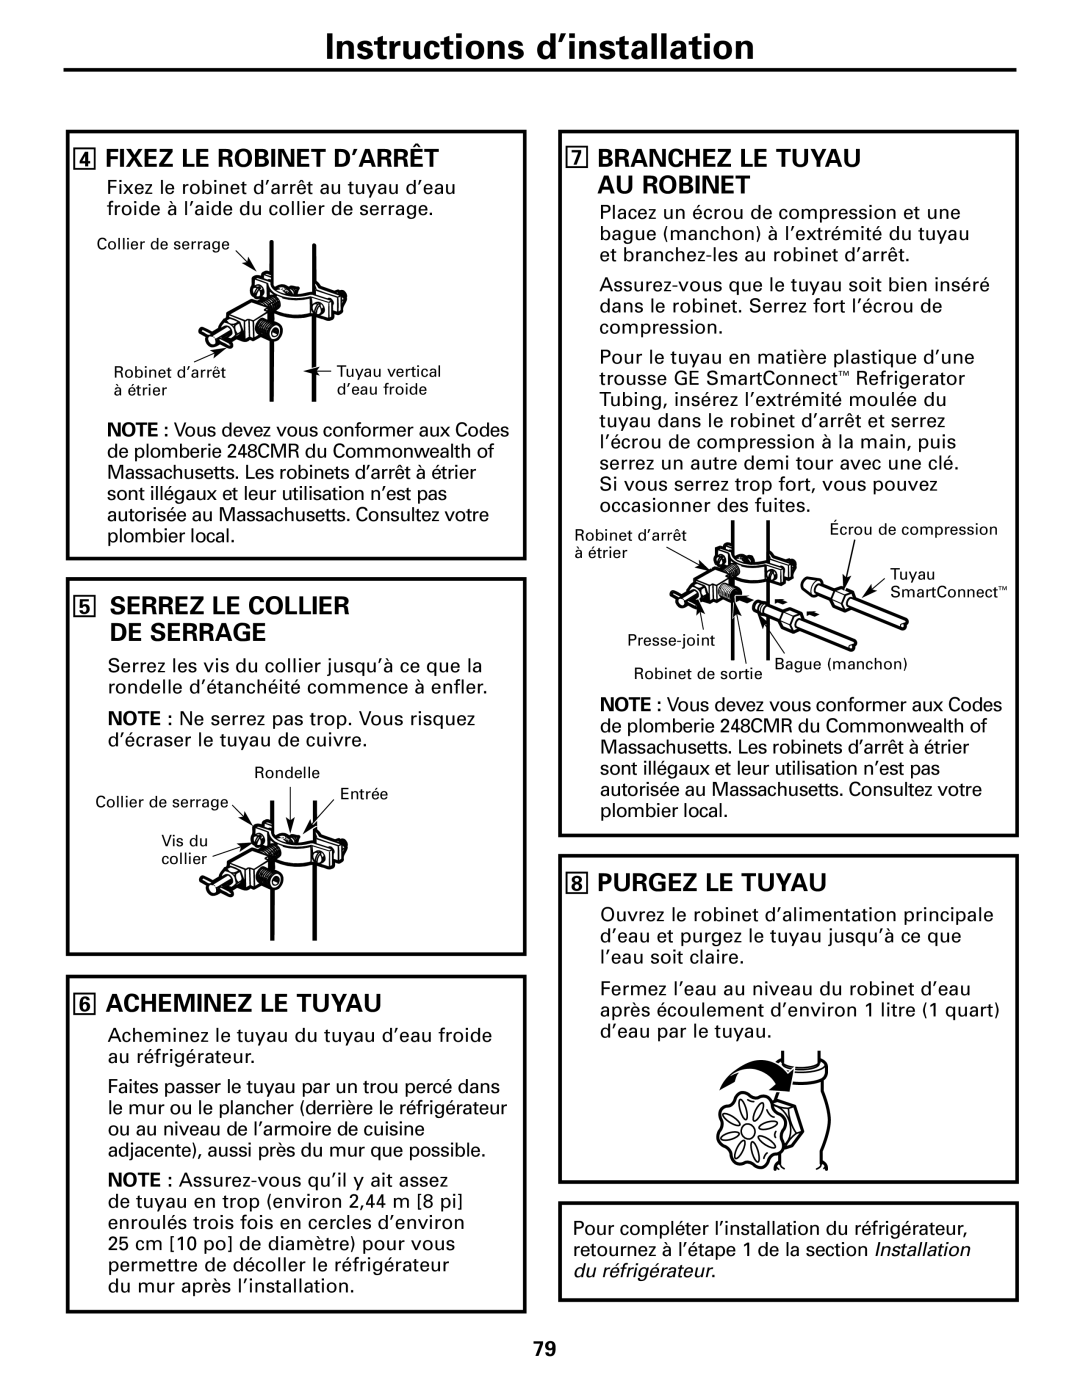 GE GDL22KCWSS manual Fixez Le Robinet D’Arrêt, Branchez Le Tuyau Au Robinet, Acheminez Le Tuyau, Purgez Le Tuyau 